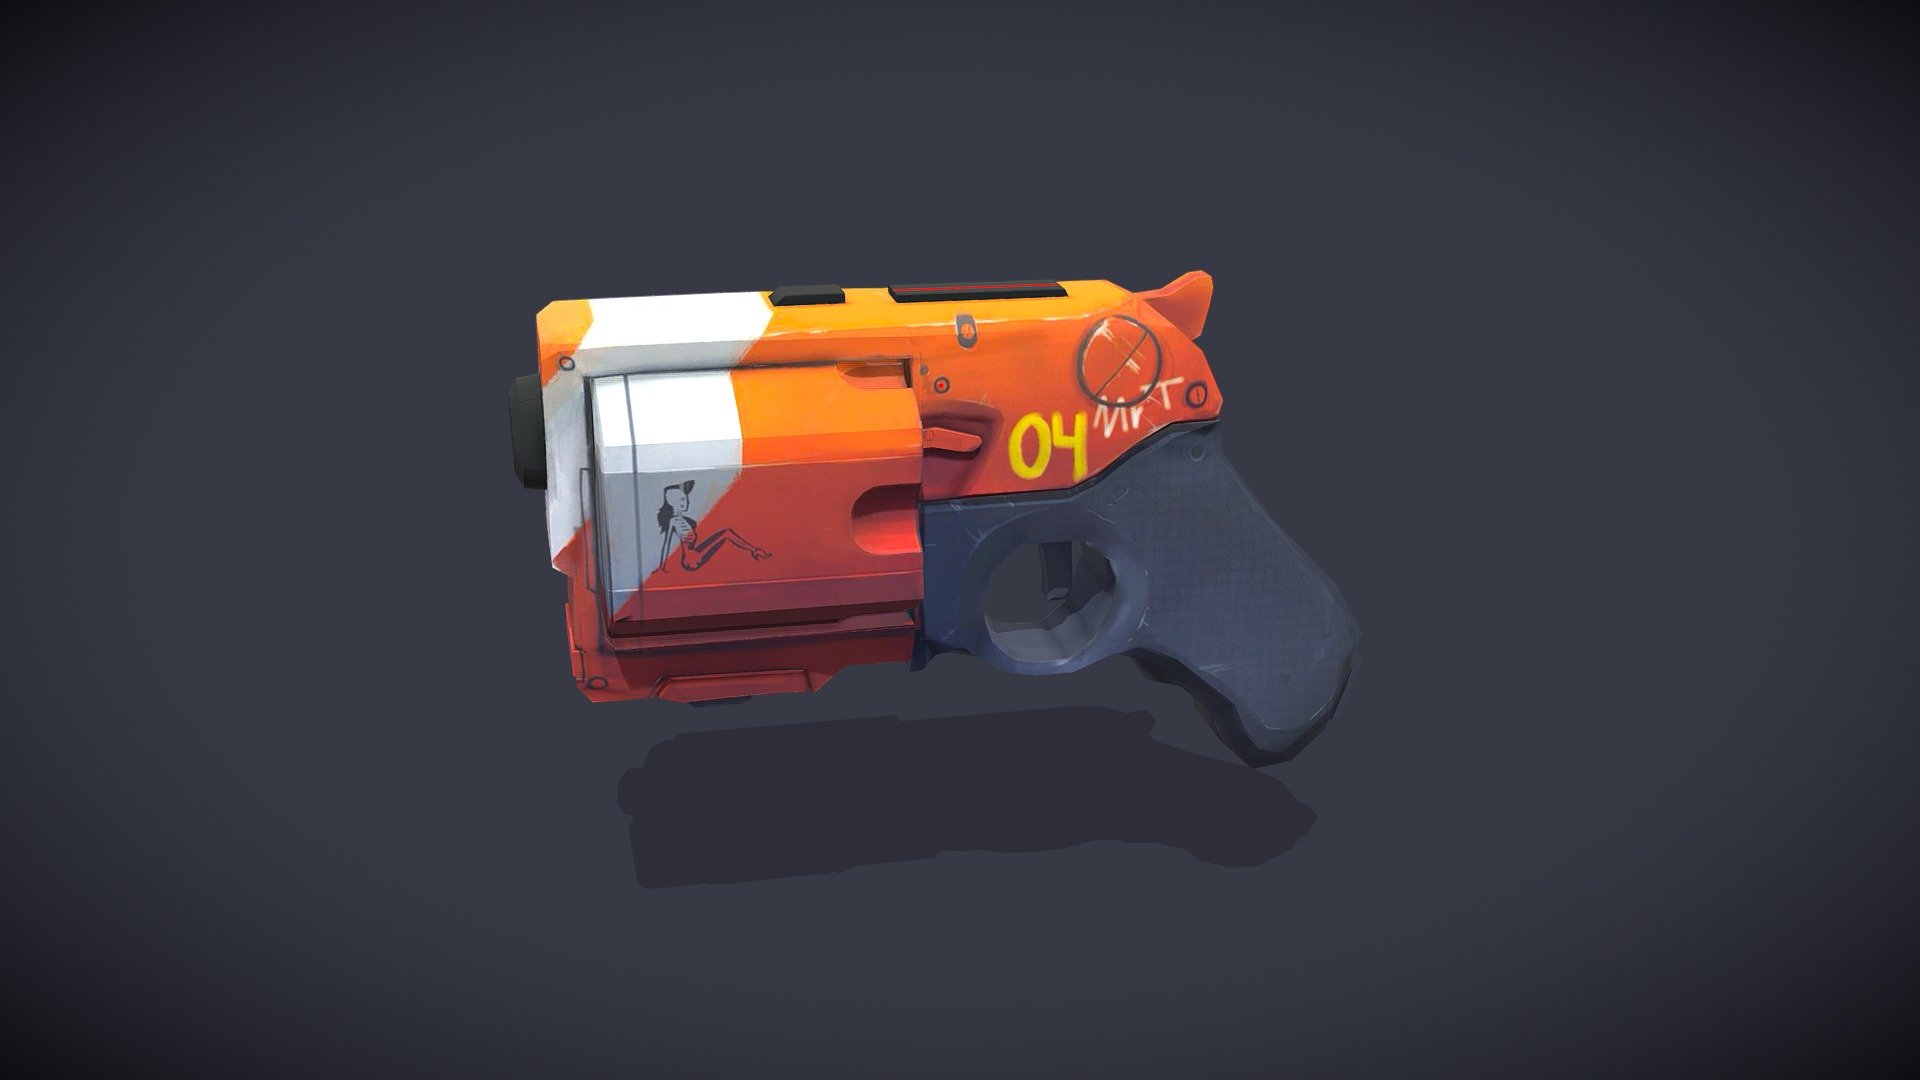 Bladerunner pistol